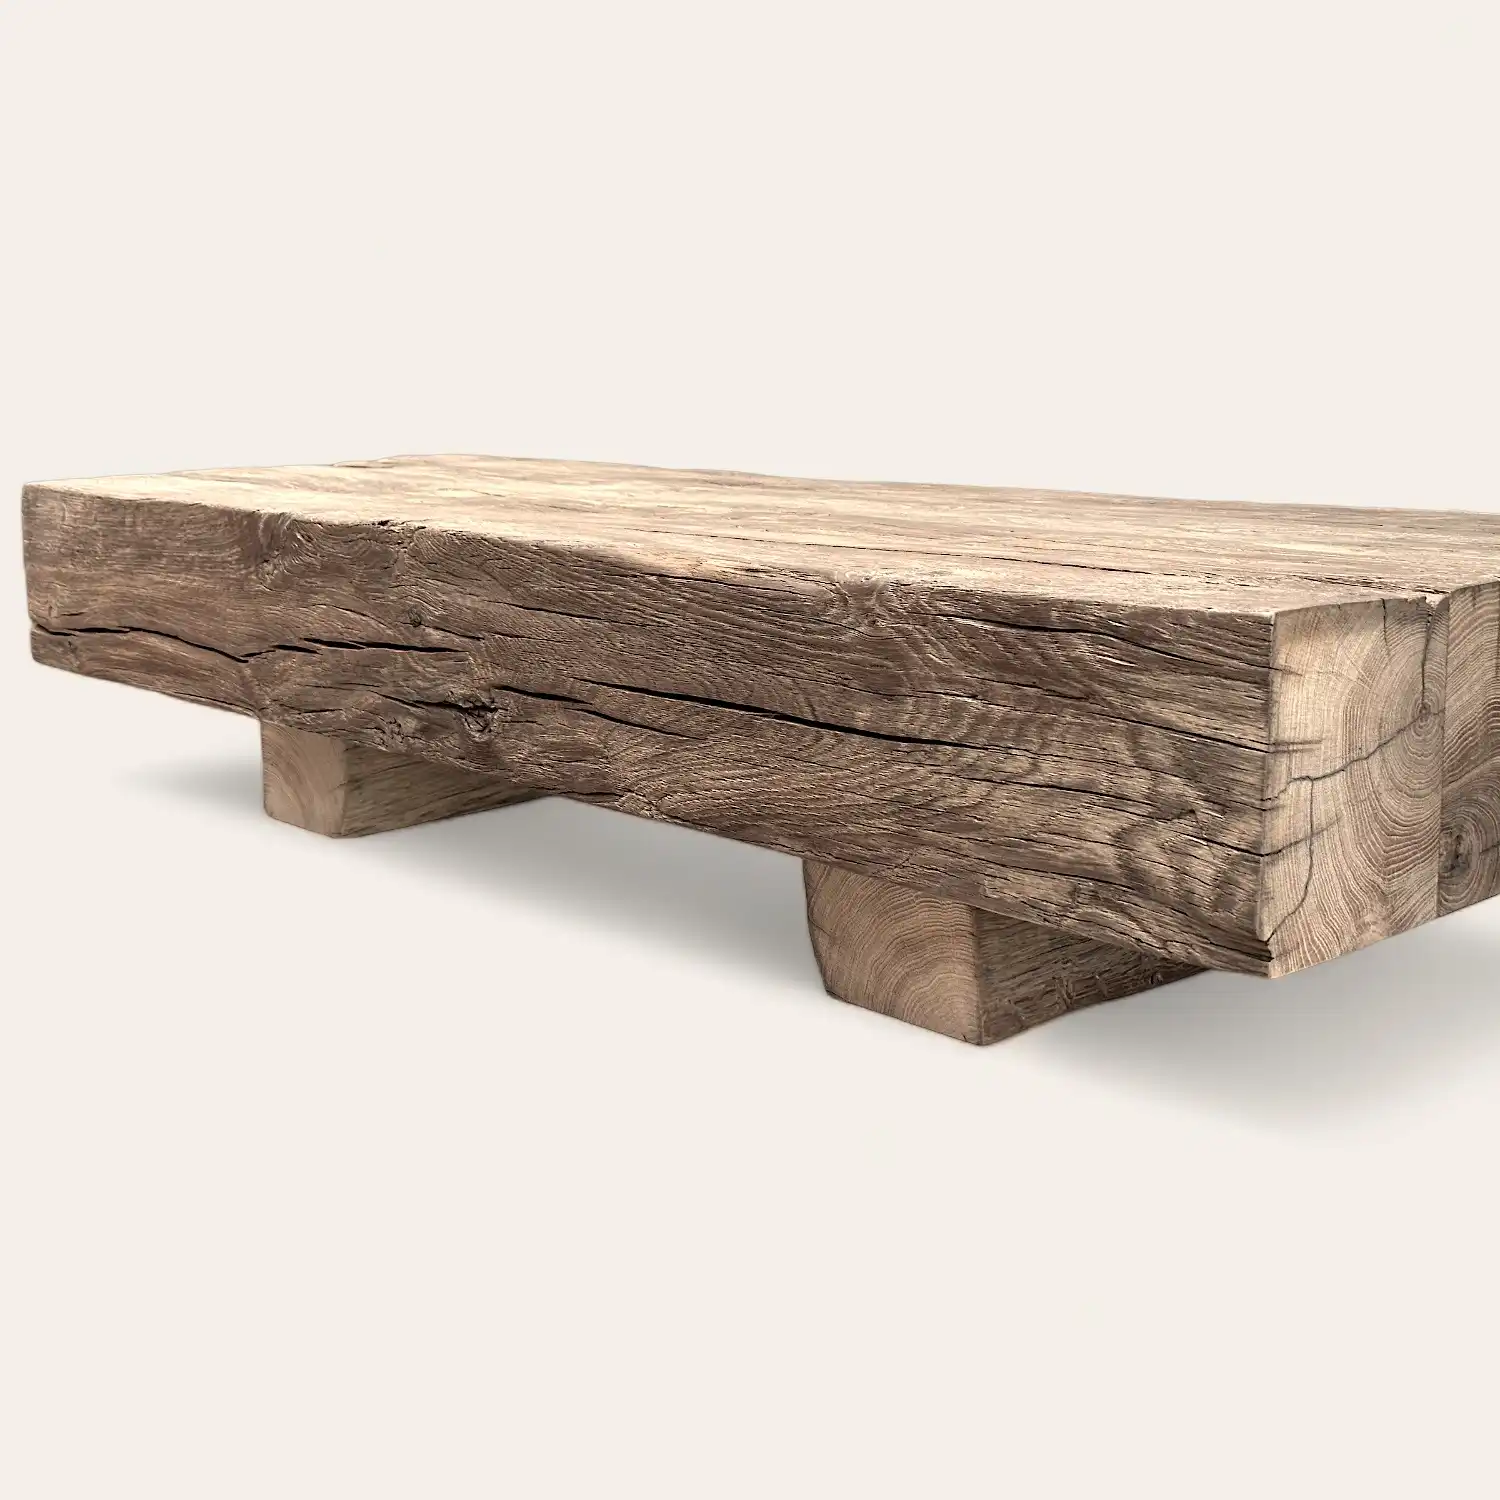  Une table basse en bois rustique fabriquée à partir de bois récupéré. 